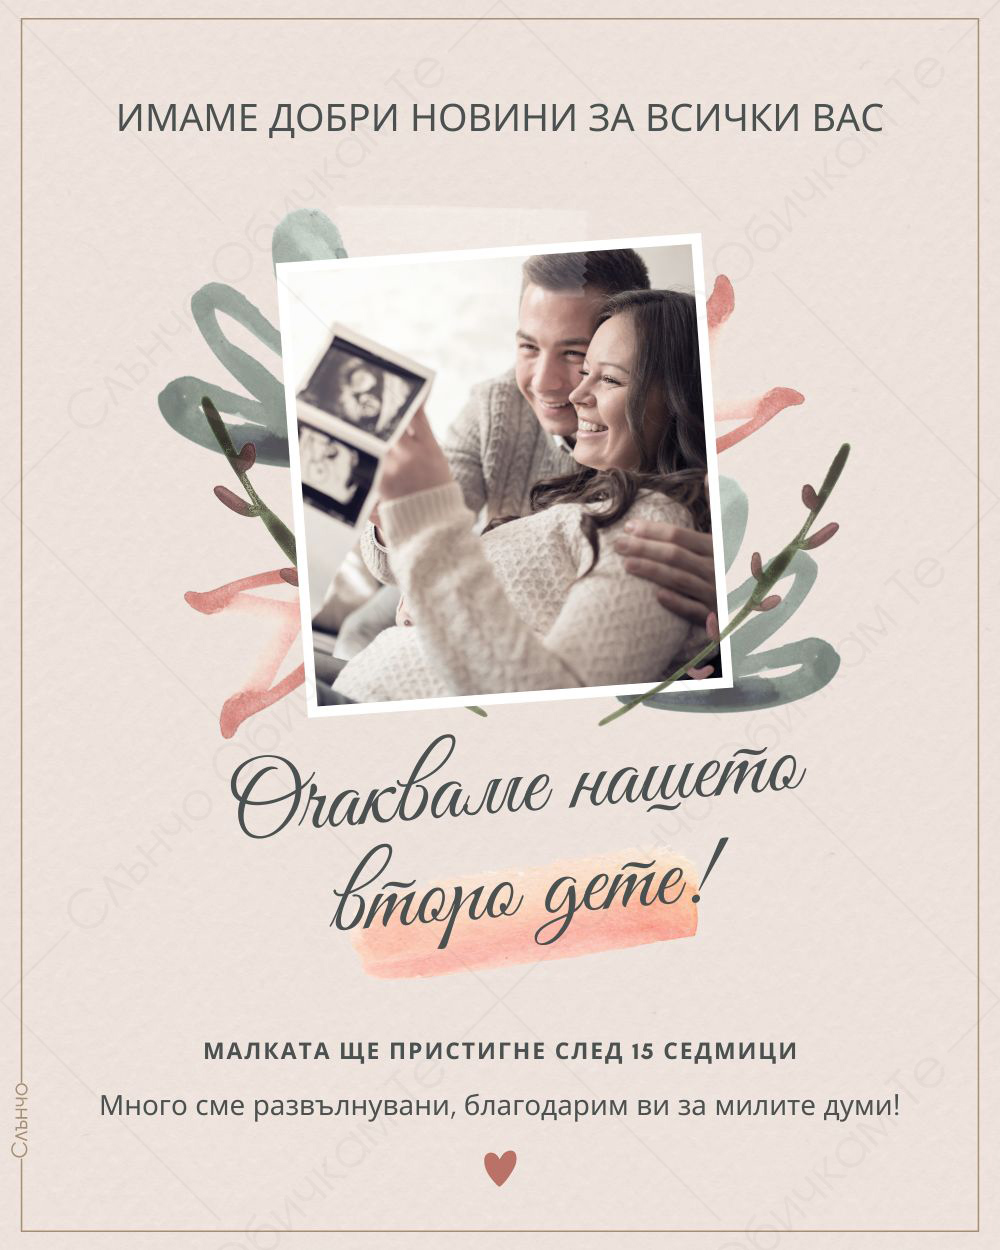 Очакваме нашето второ дете – Персонализирани картички за обявяване на бебе и бременност – Магазина на Слънчо